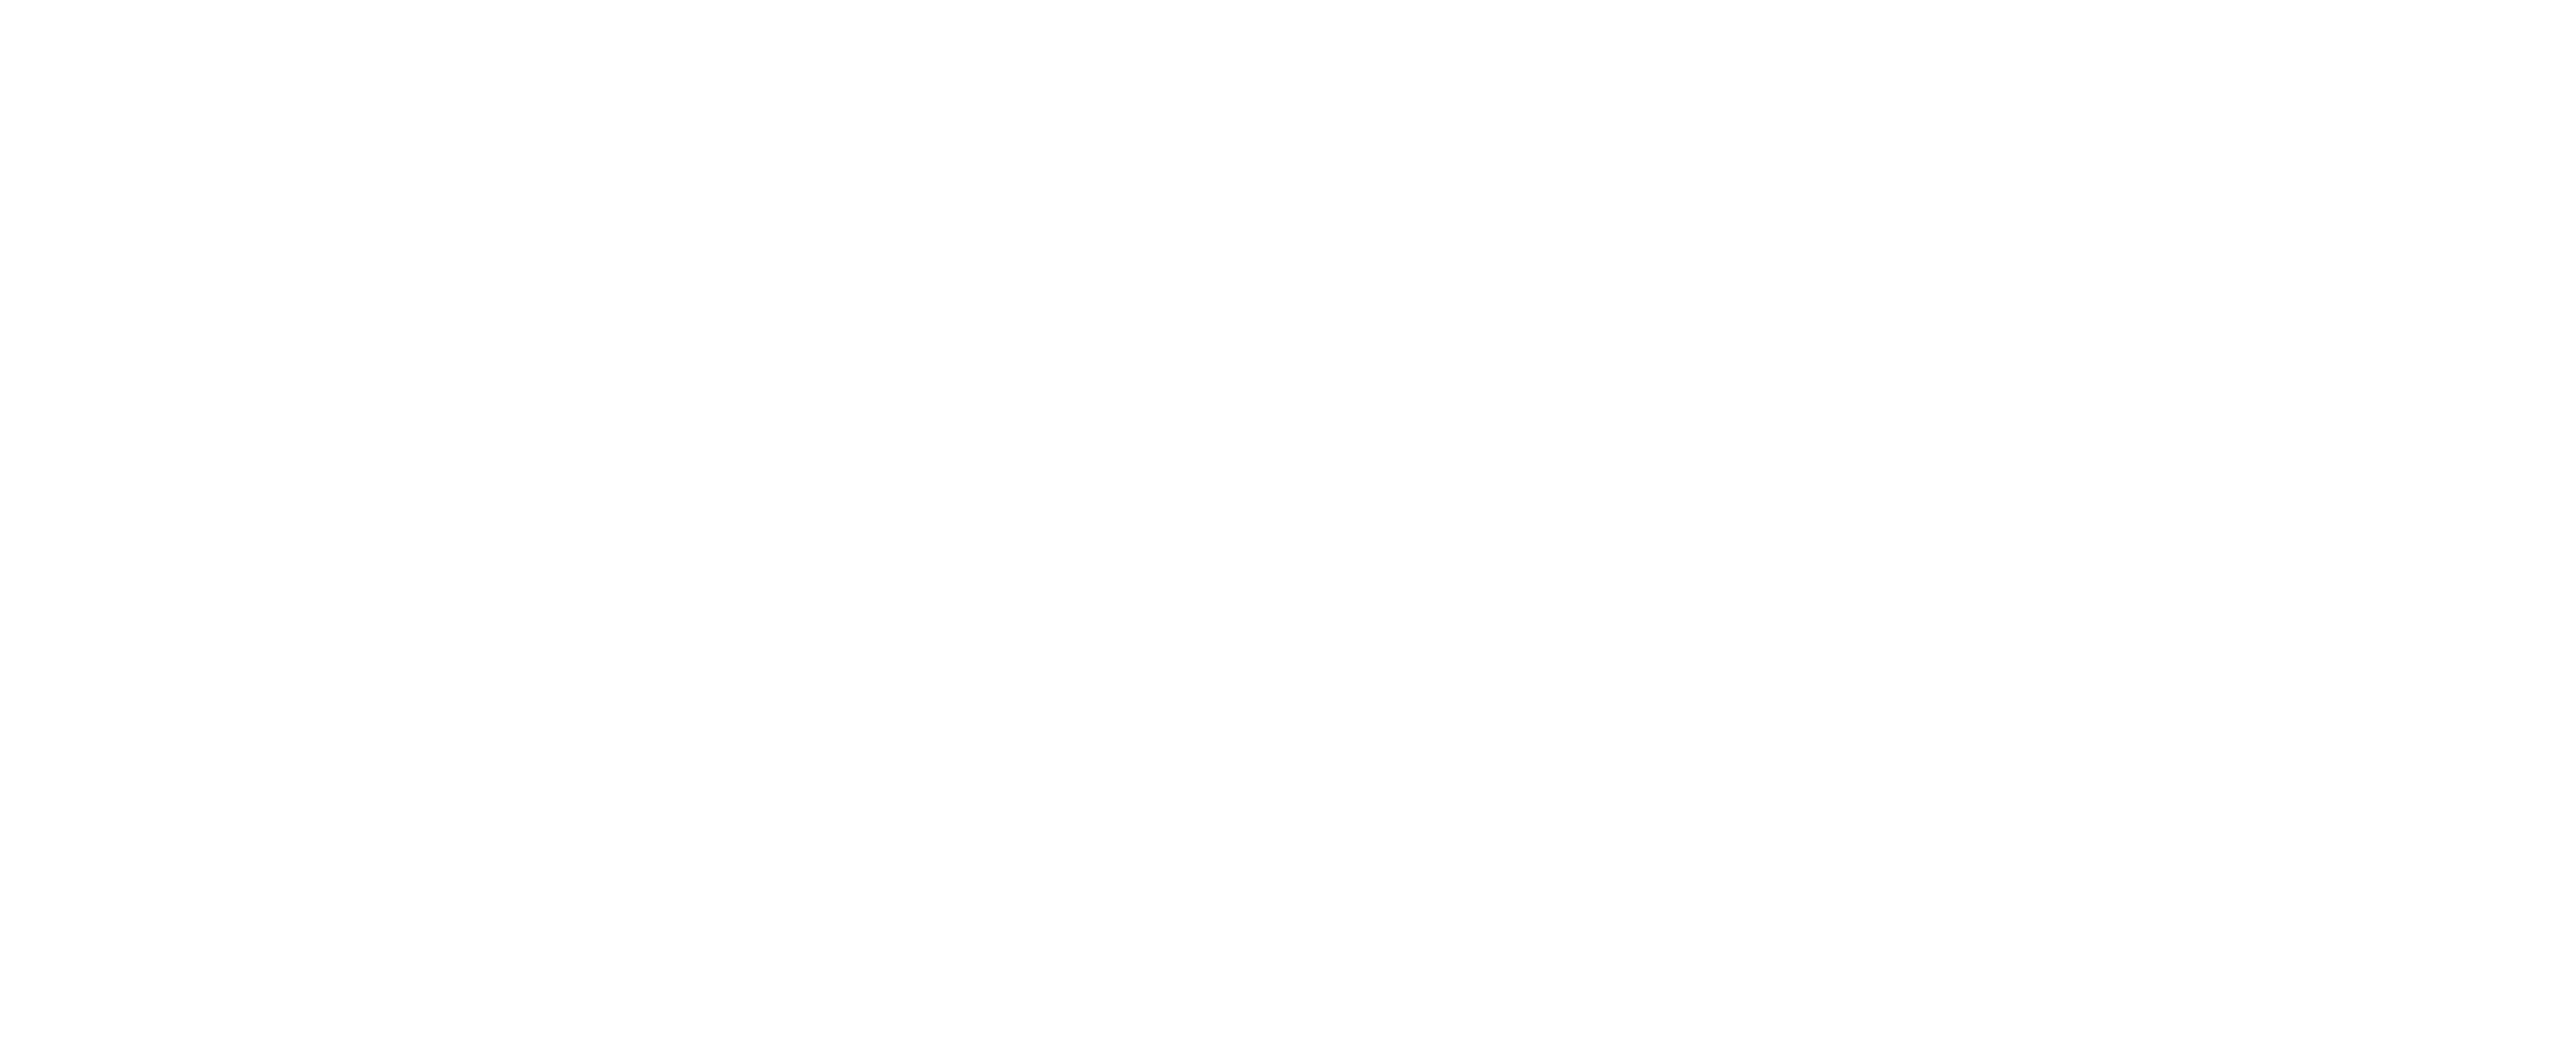 Logo de comisión nacional bancaria y de valores en expansive